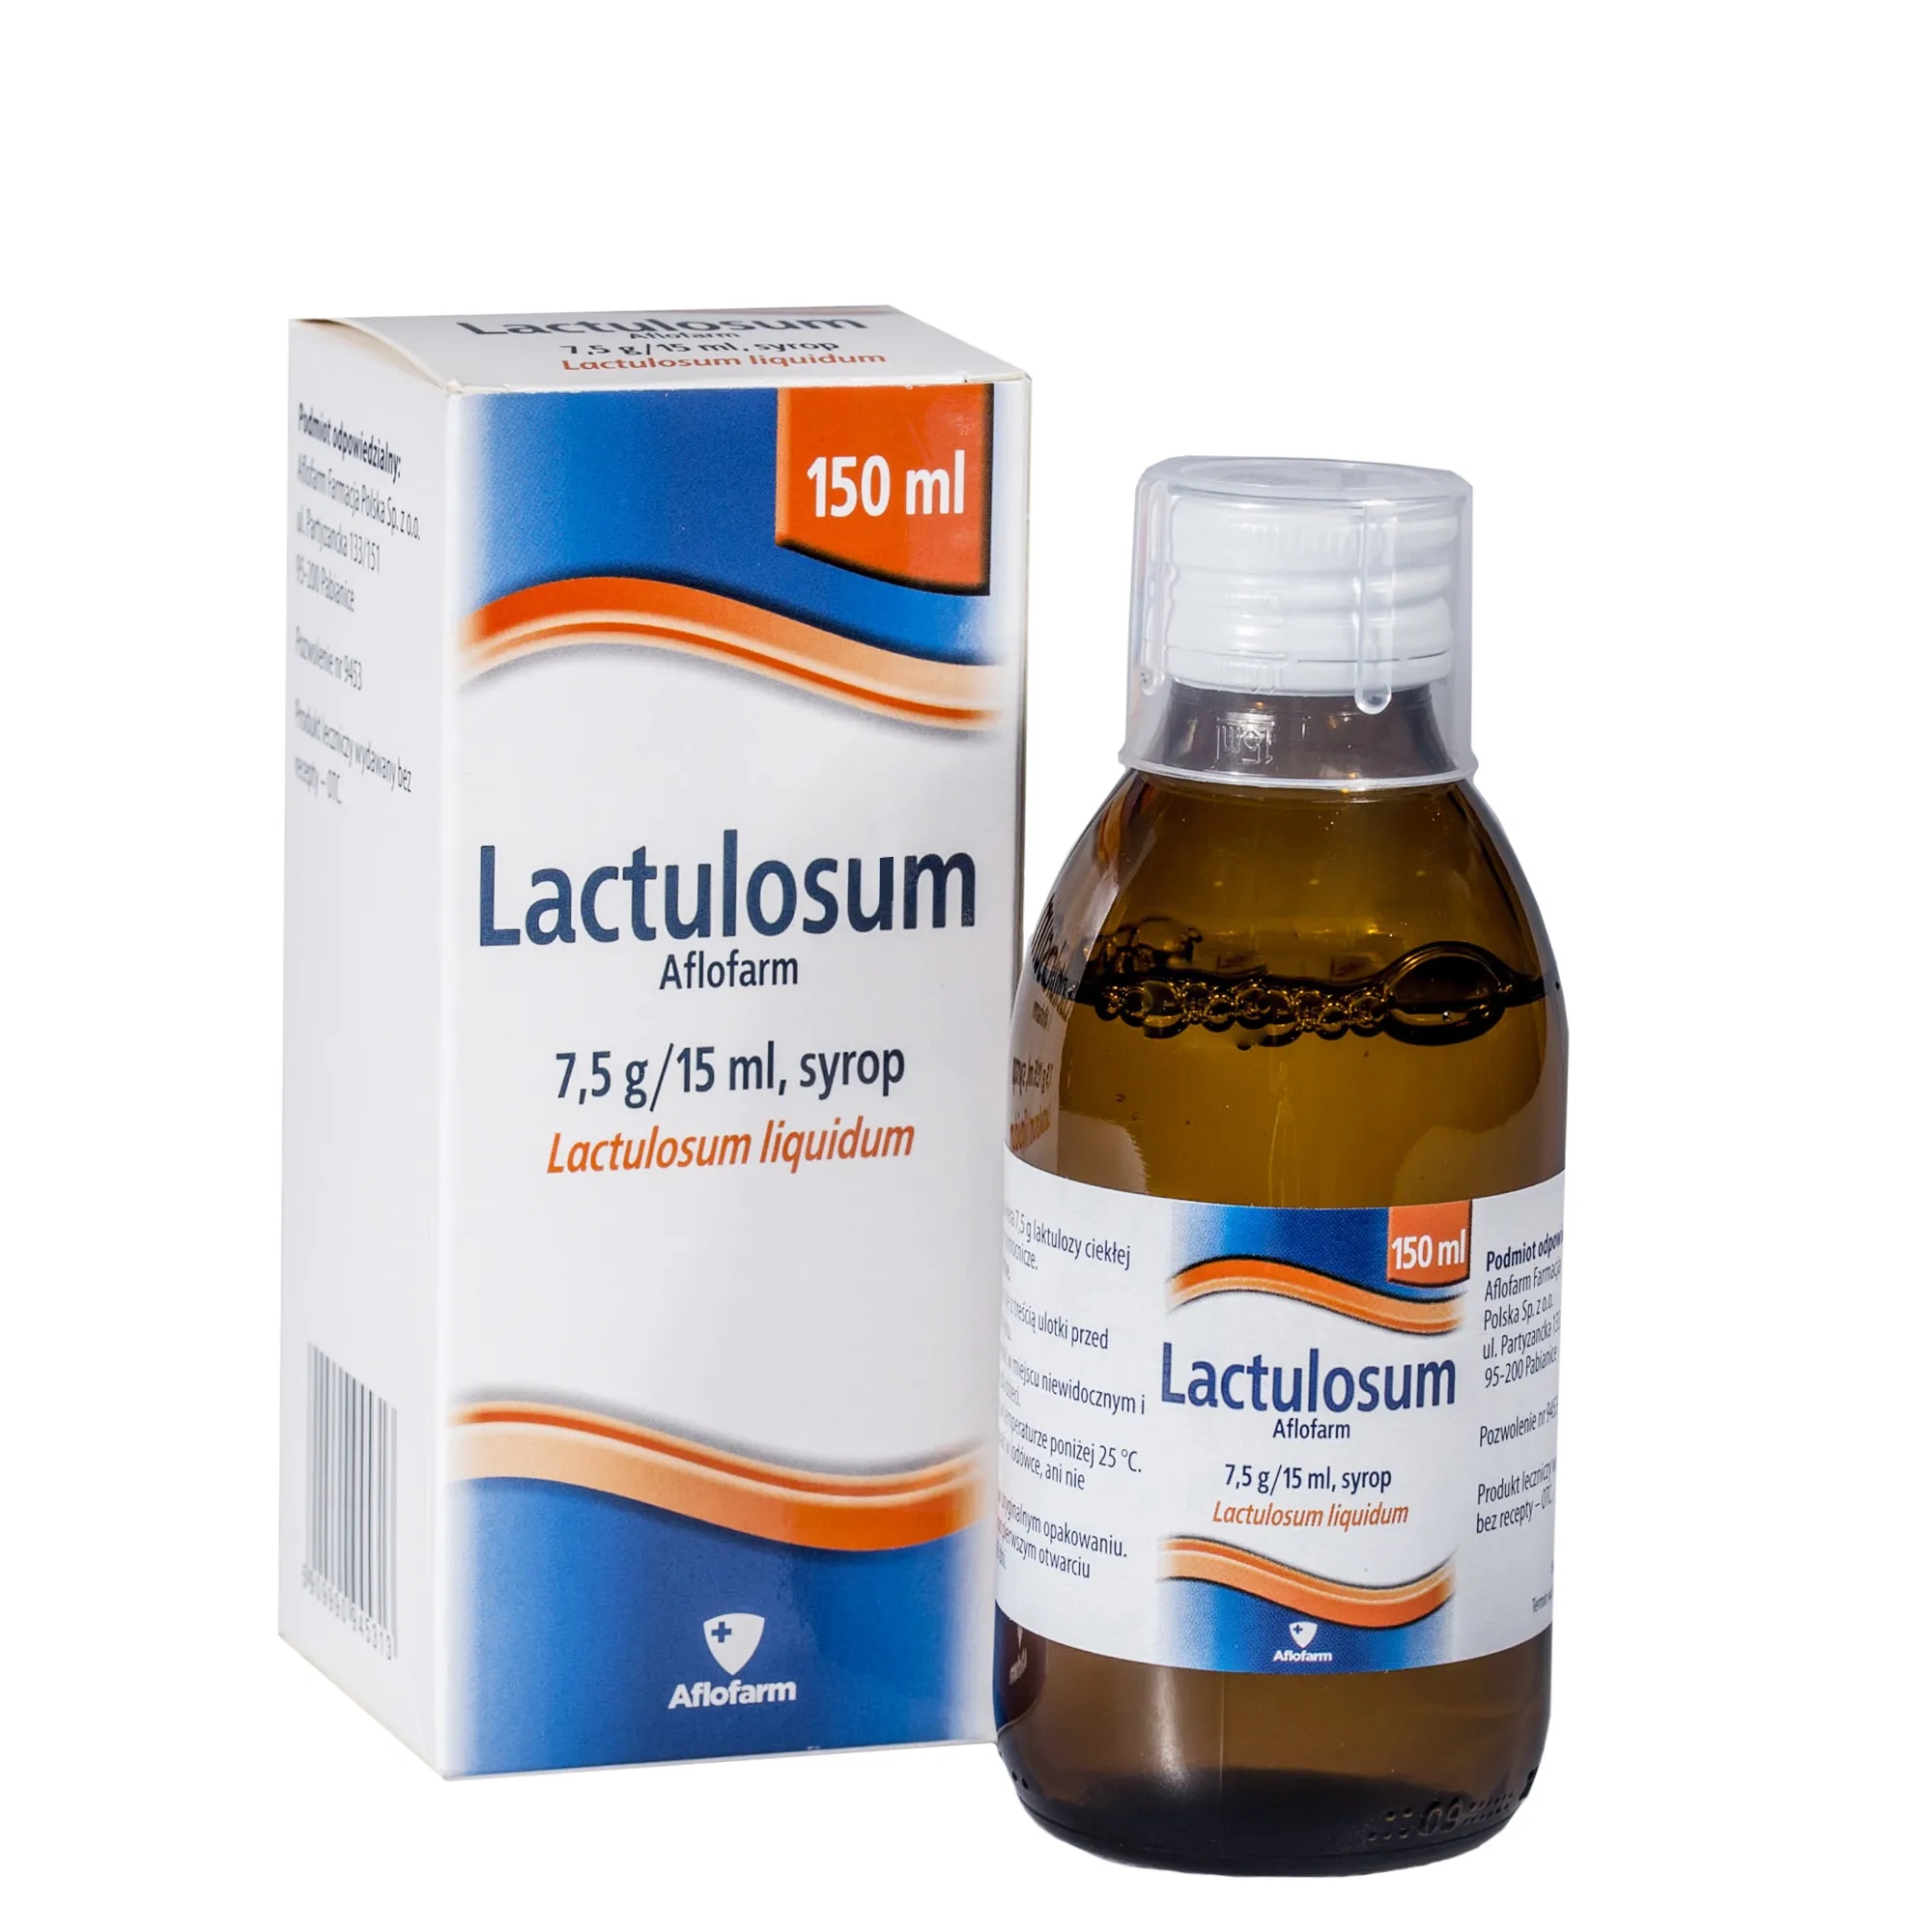 Lactulosum Aflofarm, 7,5g/15ml, suyrop, 150 ml